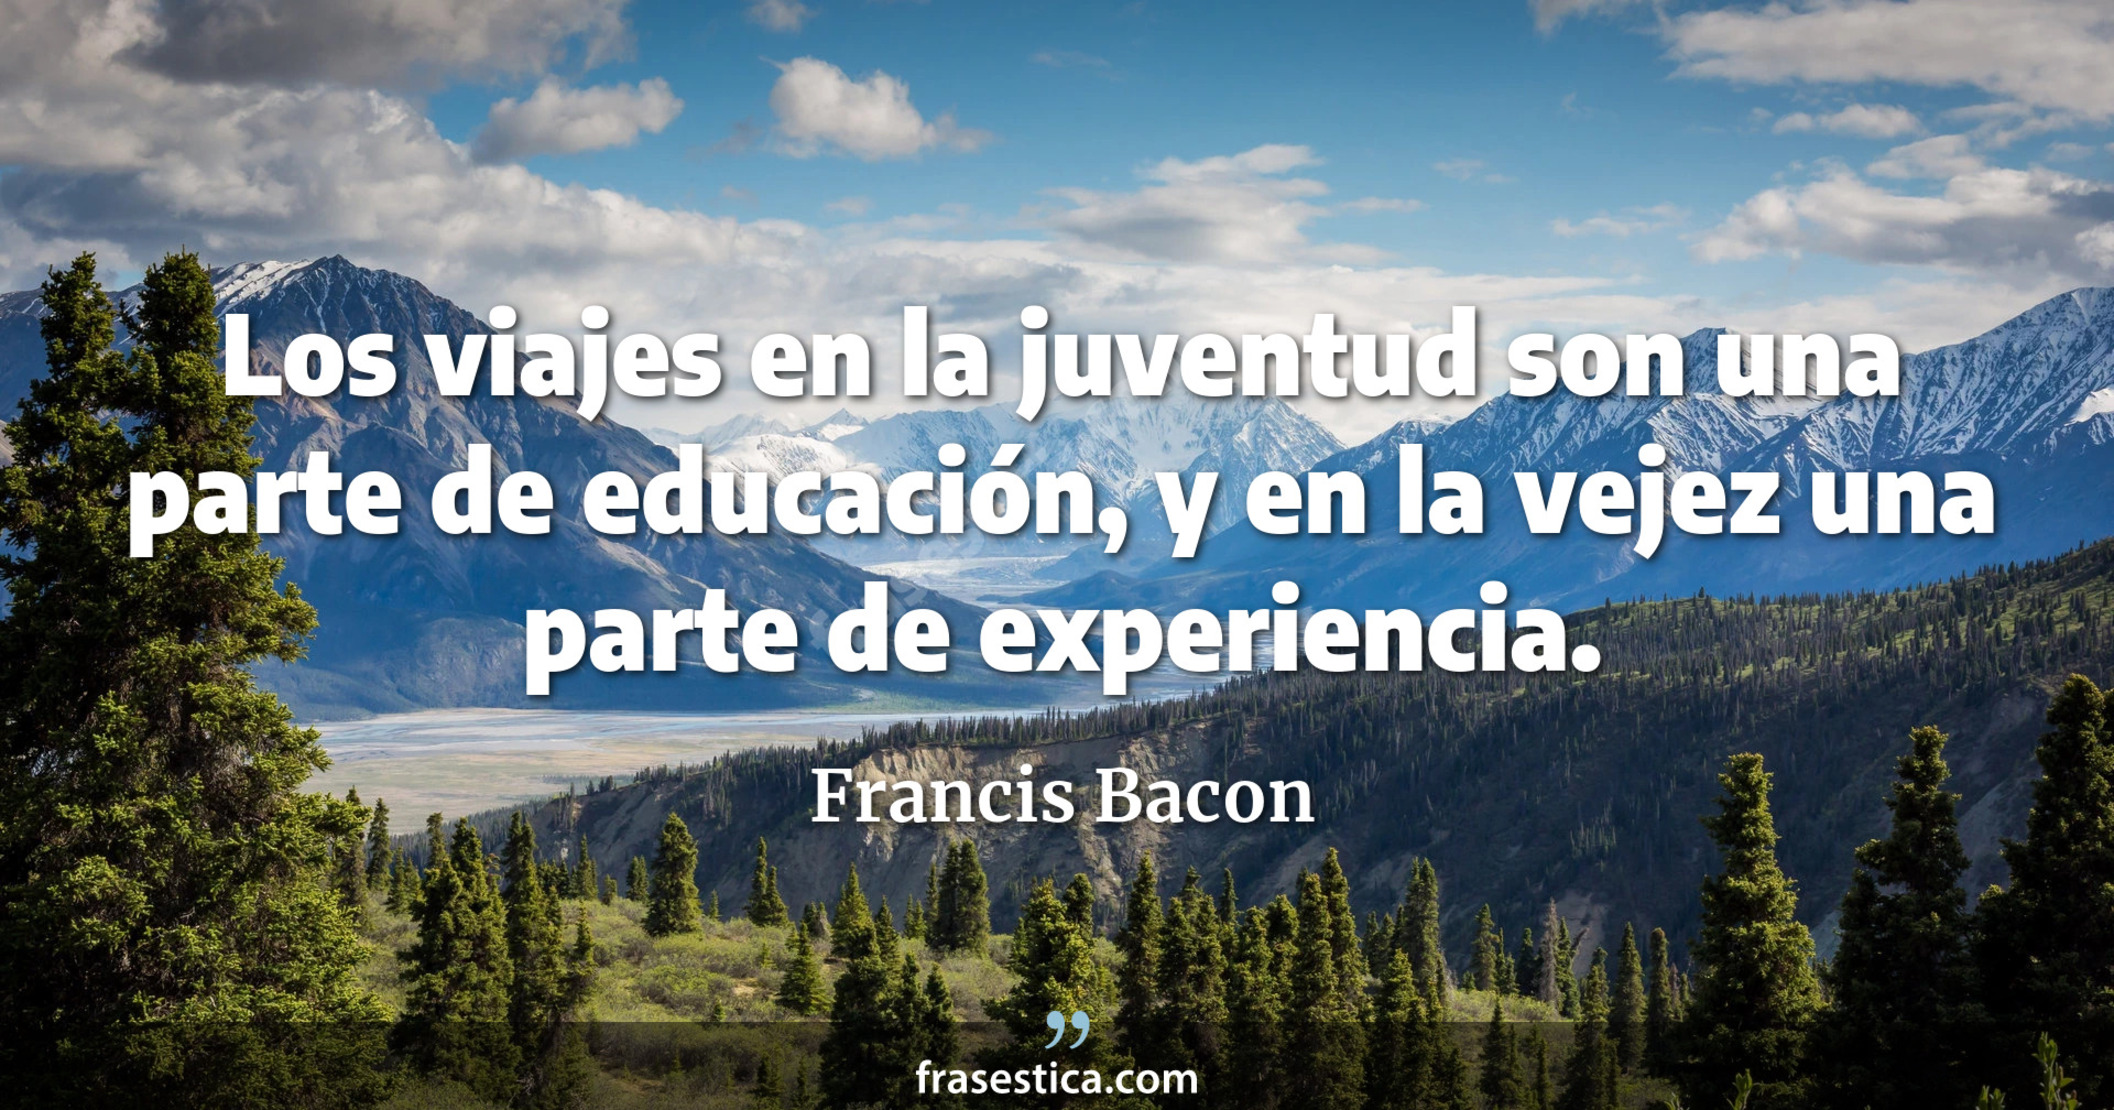 Los viajes en la juventud son una parte de educación, y en la vejez una parte de experiencia. - Francis Bacon